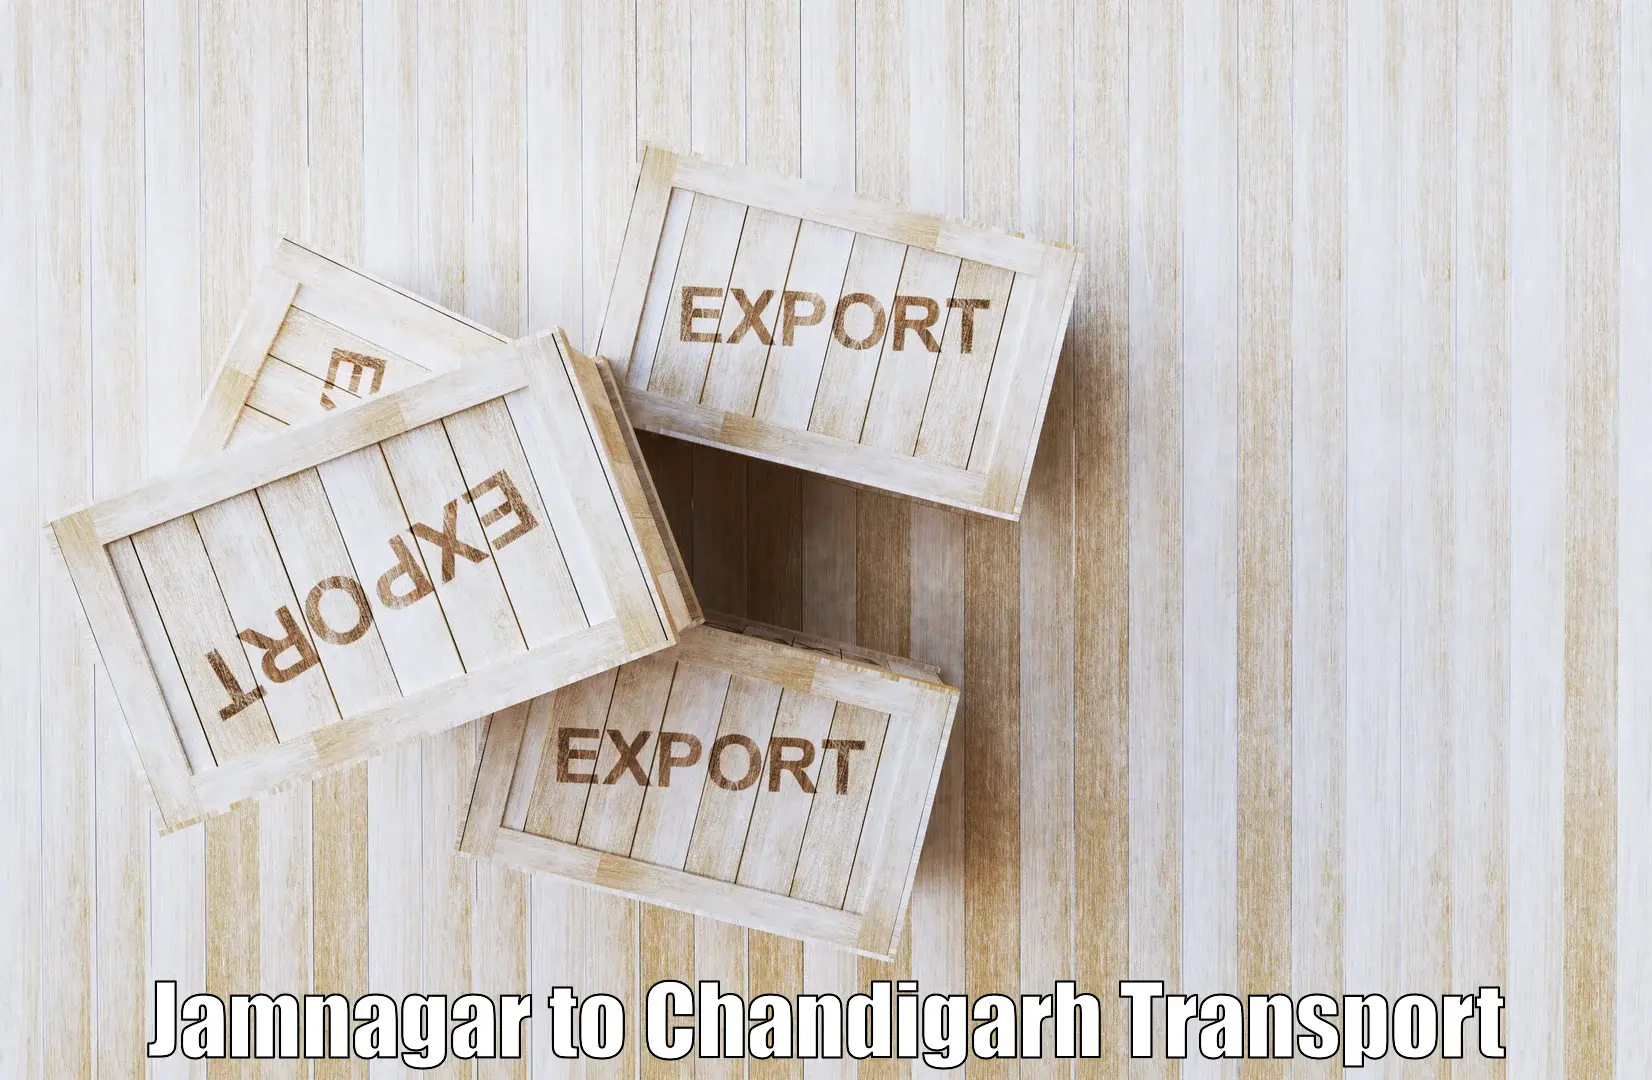 Road transport online services in Jamnagar to Chandigarh